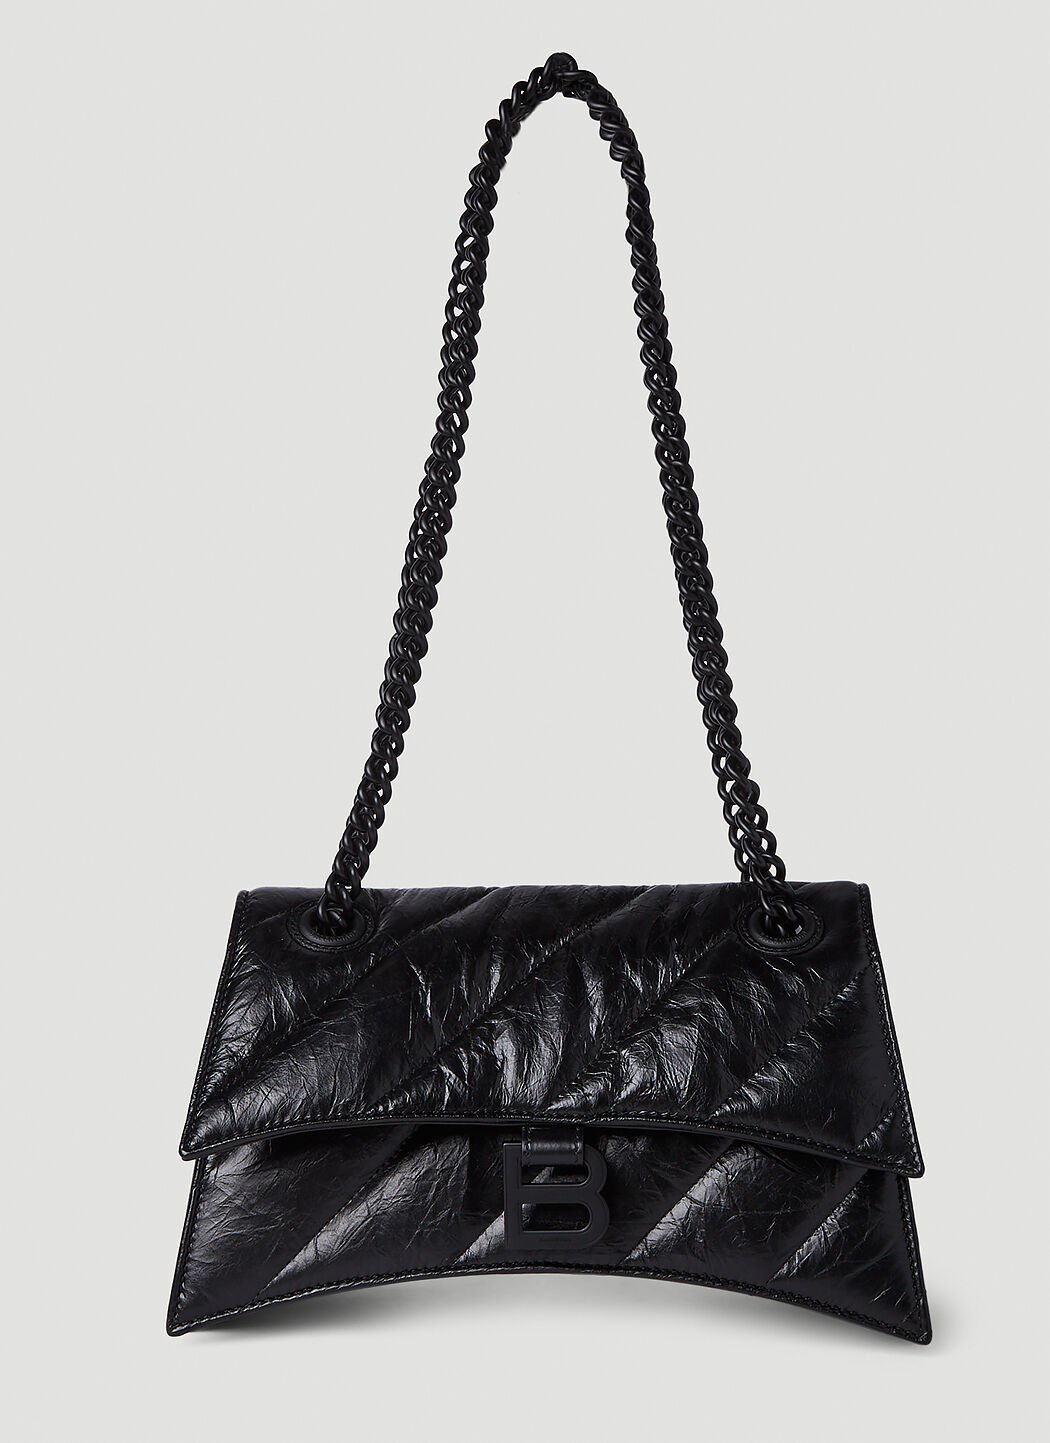 Balenciaga Crush Chain Small Shoulder Bag Black bal0254068